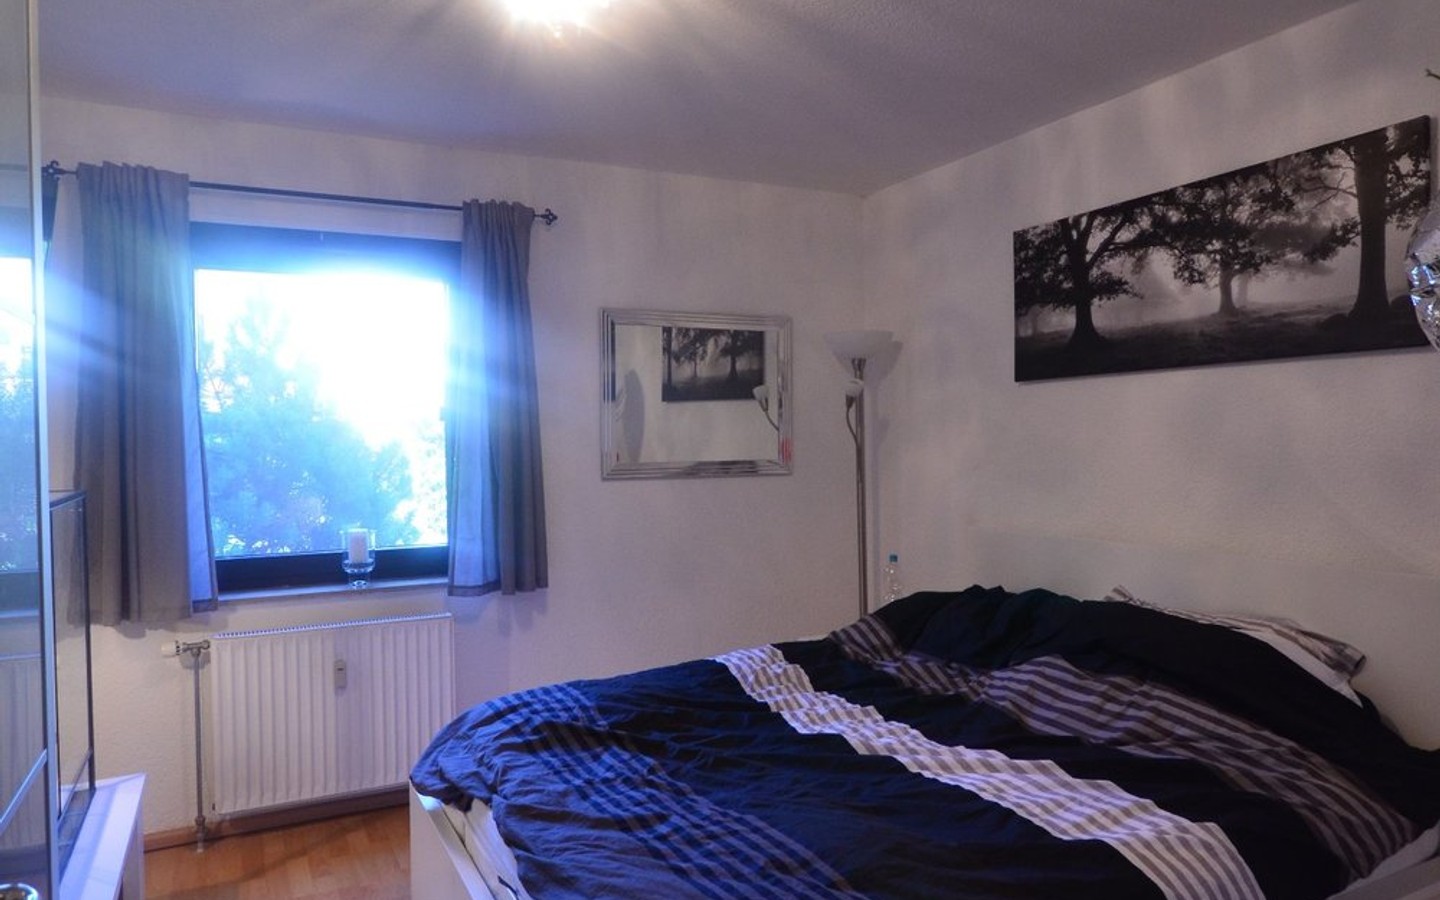 Schlafzimmer - Krebs Immobilien: Eppelheim (Hildastraße): Sehr schöne Zweizimmerwohnung in zentraler Lage